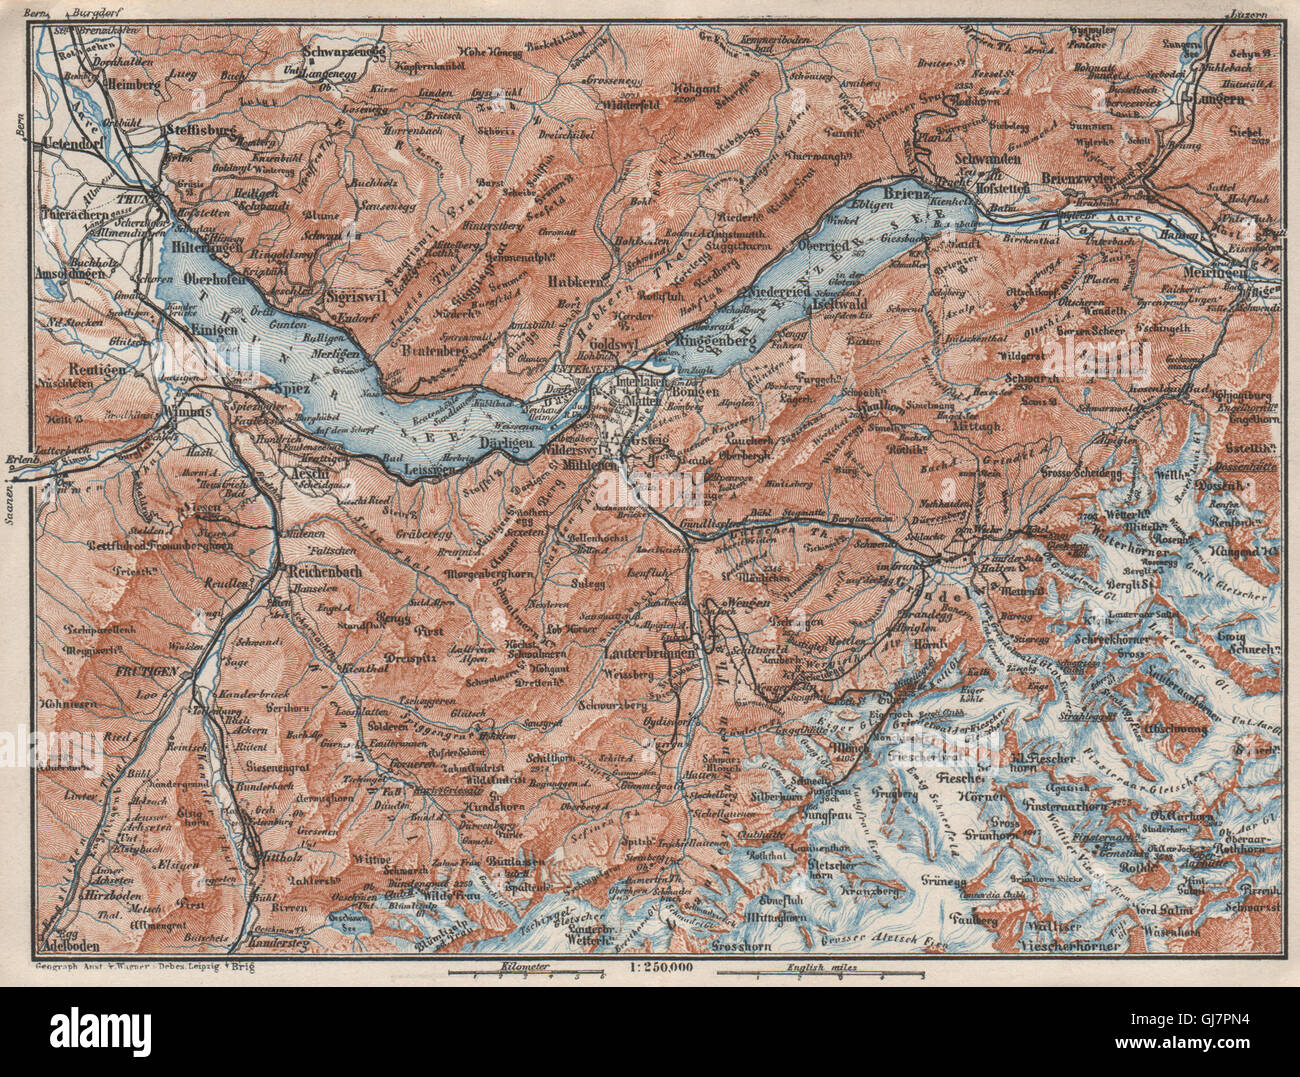 BERNESE OBERLAND. Wengen Mürren Grundelwald Reutigen Interlaken Eiger, 1928 map Stock Photo